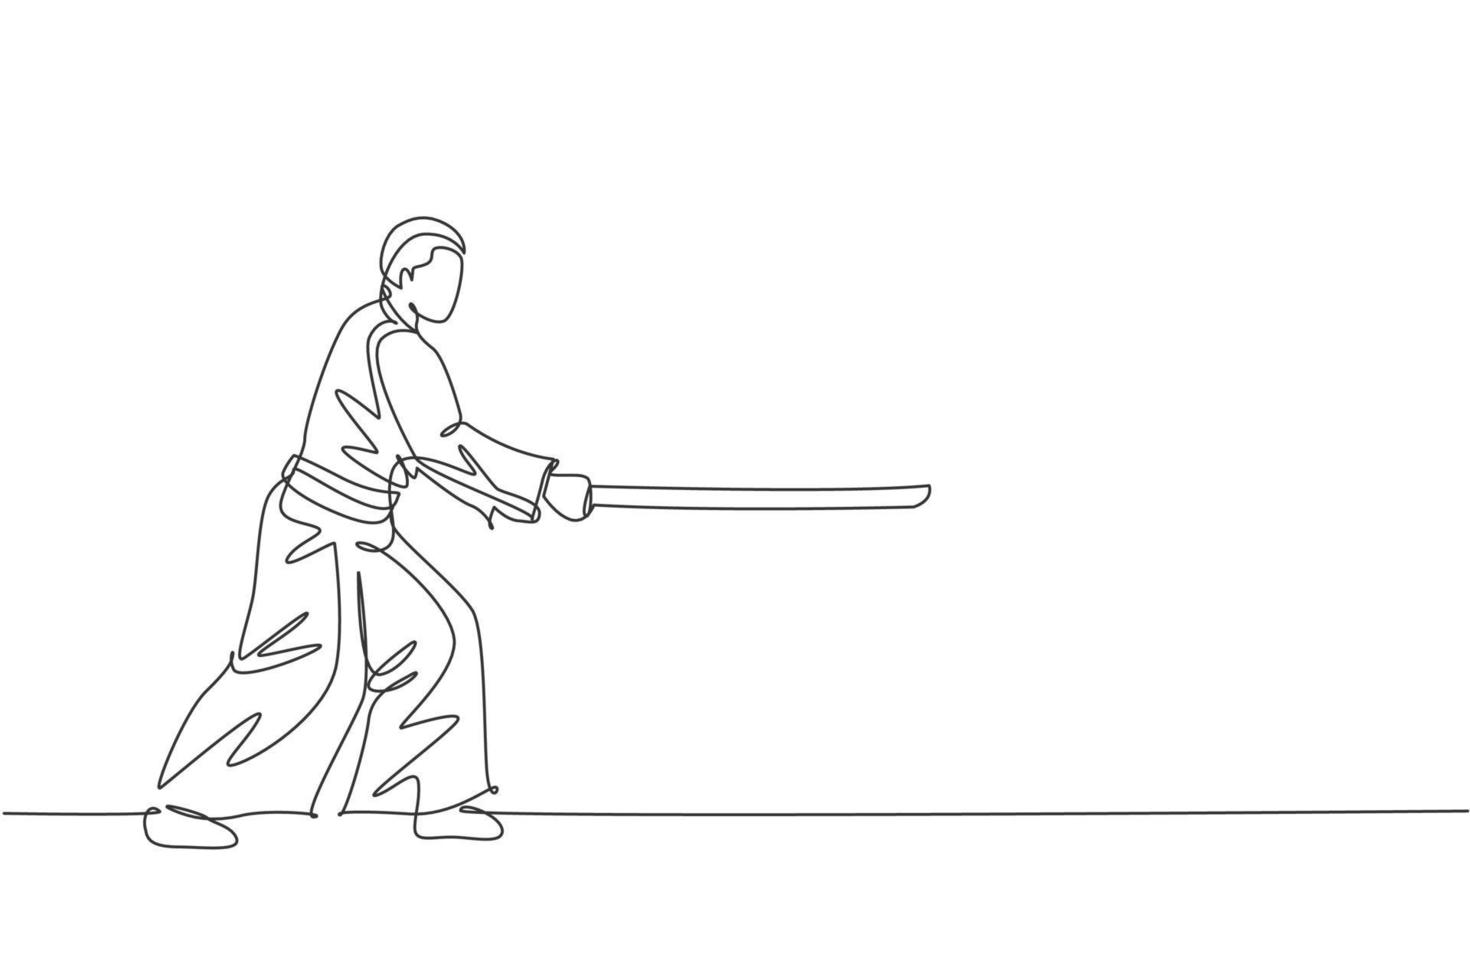 um lutador de aikido de desenho de linha contínua, praticando pose de luta usando uma espada de madeira no centro de treinamento do dojo. conceito de esporte de arte marcial. ilustração em vetor design gráfico de desenho de linha única dinâmica